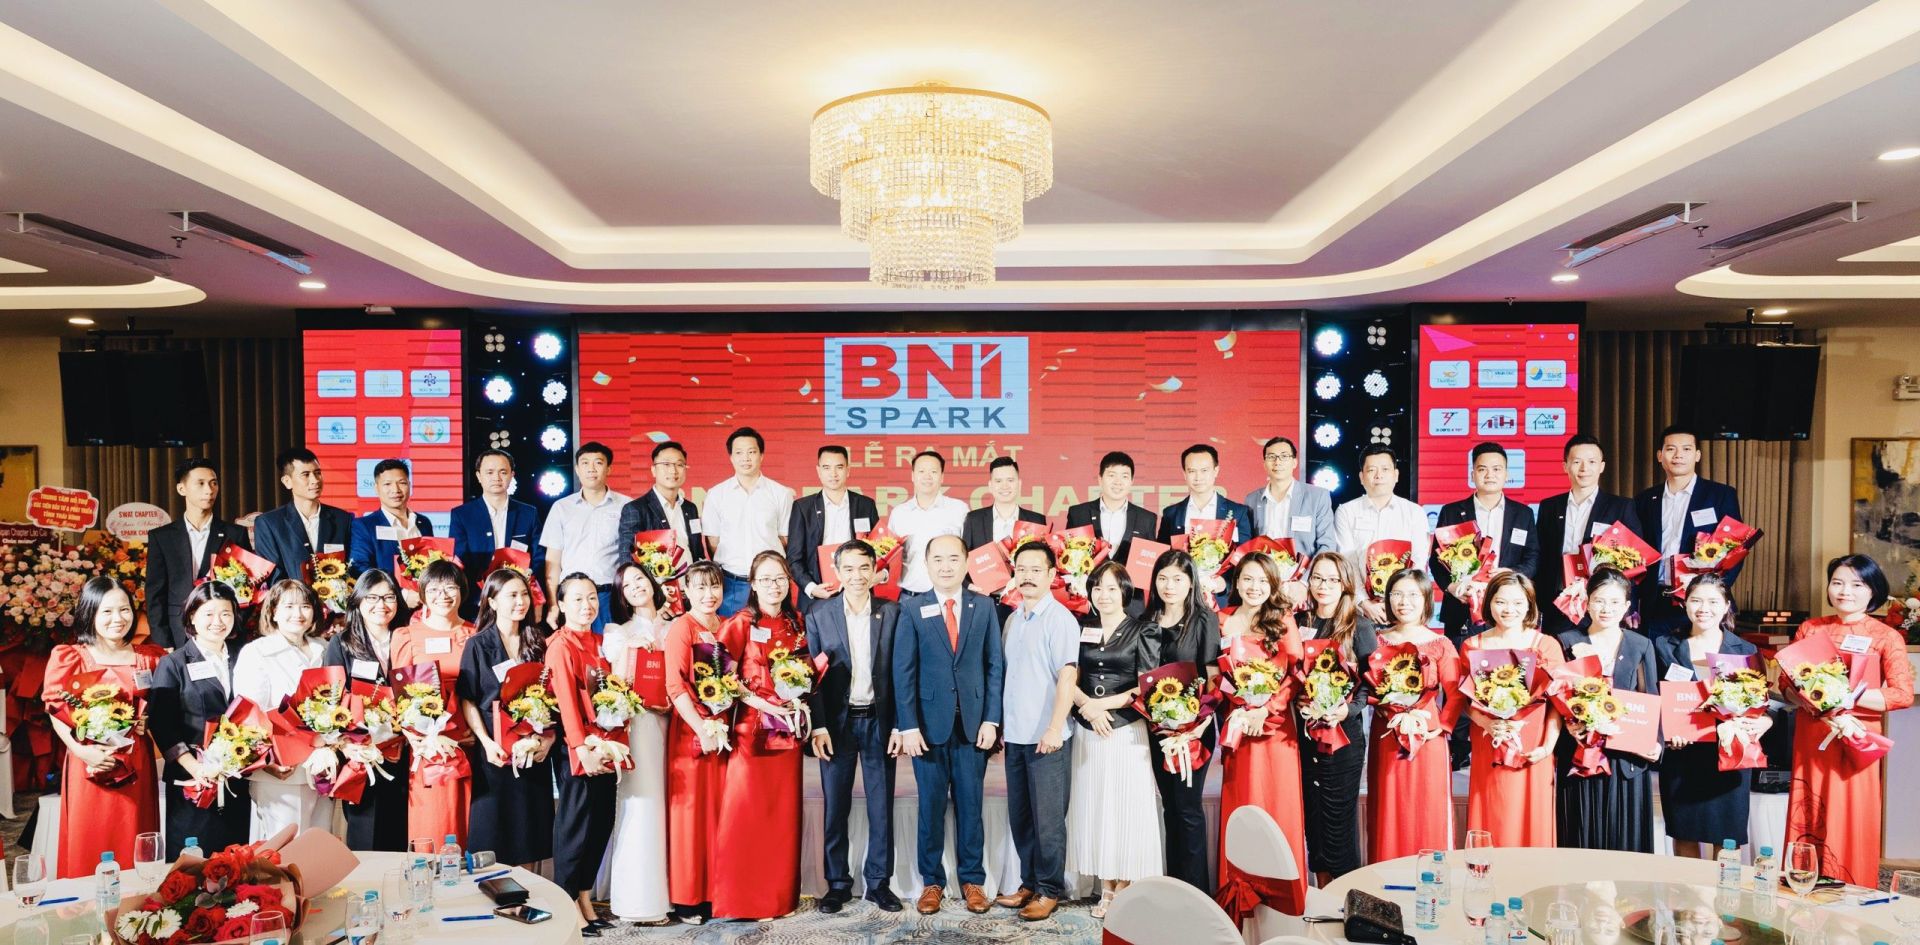 Chủ tịch BNI Việt Nam ông Hồ Quang Minh (ở chính giữa hàng đầu tiên) cùng các Thành viên BNI SPARK tại buổi ra mắt